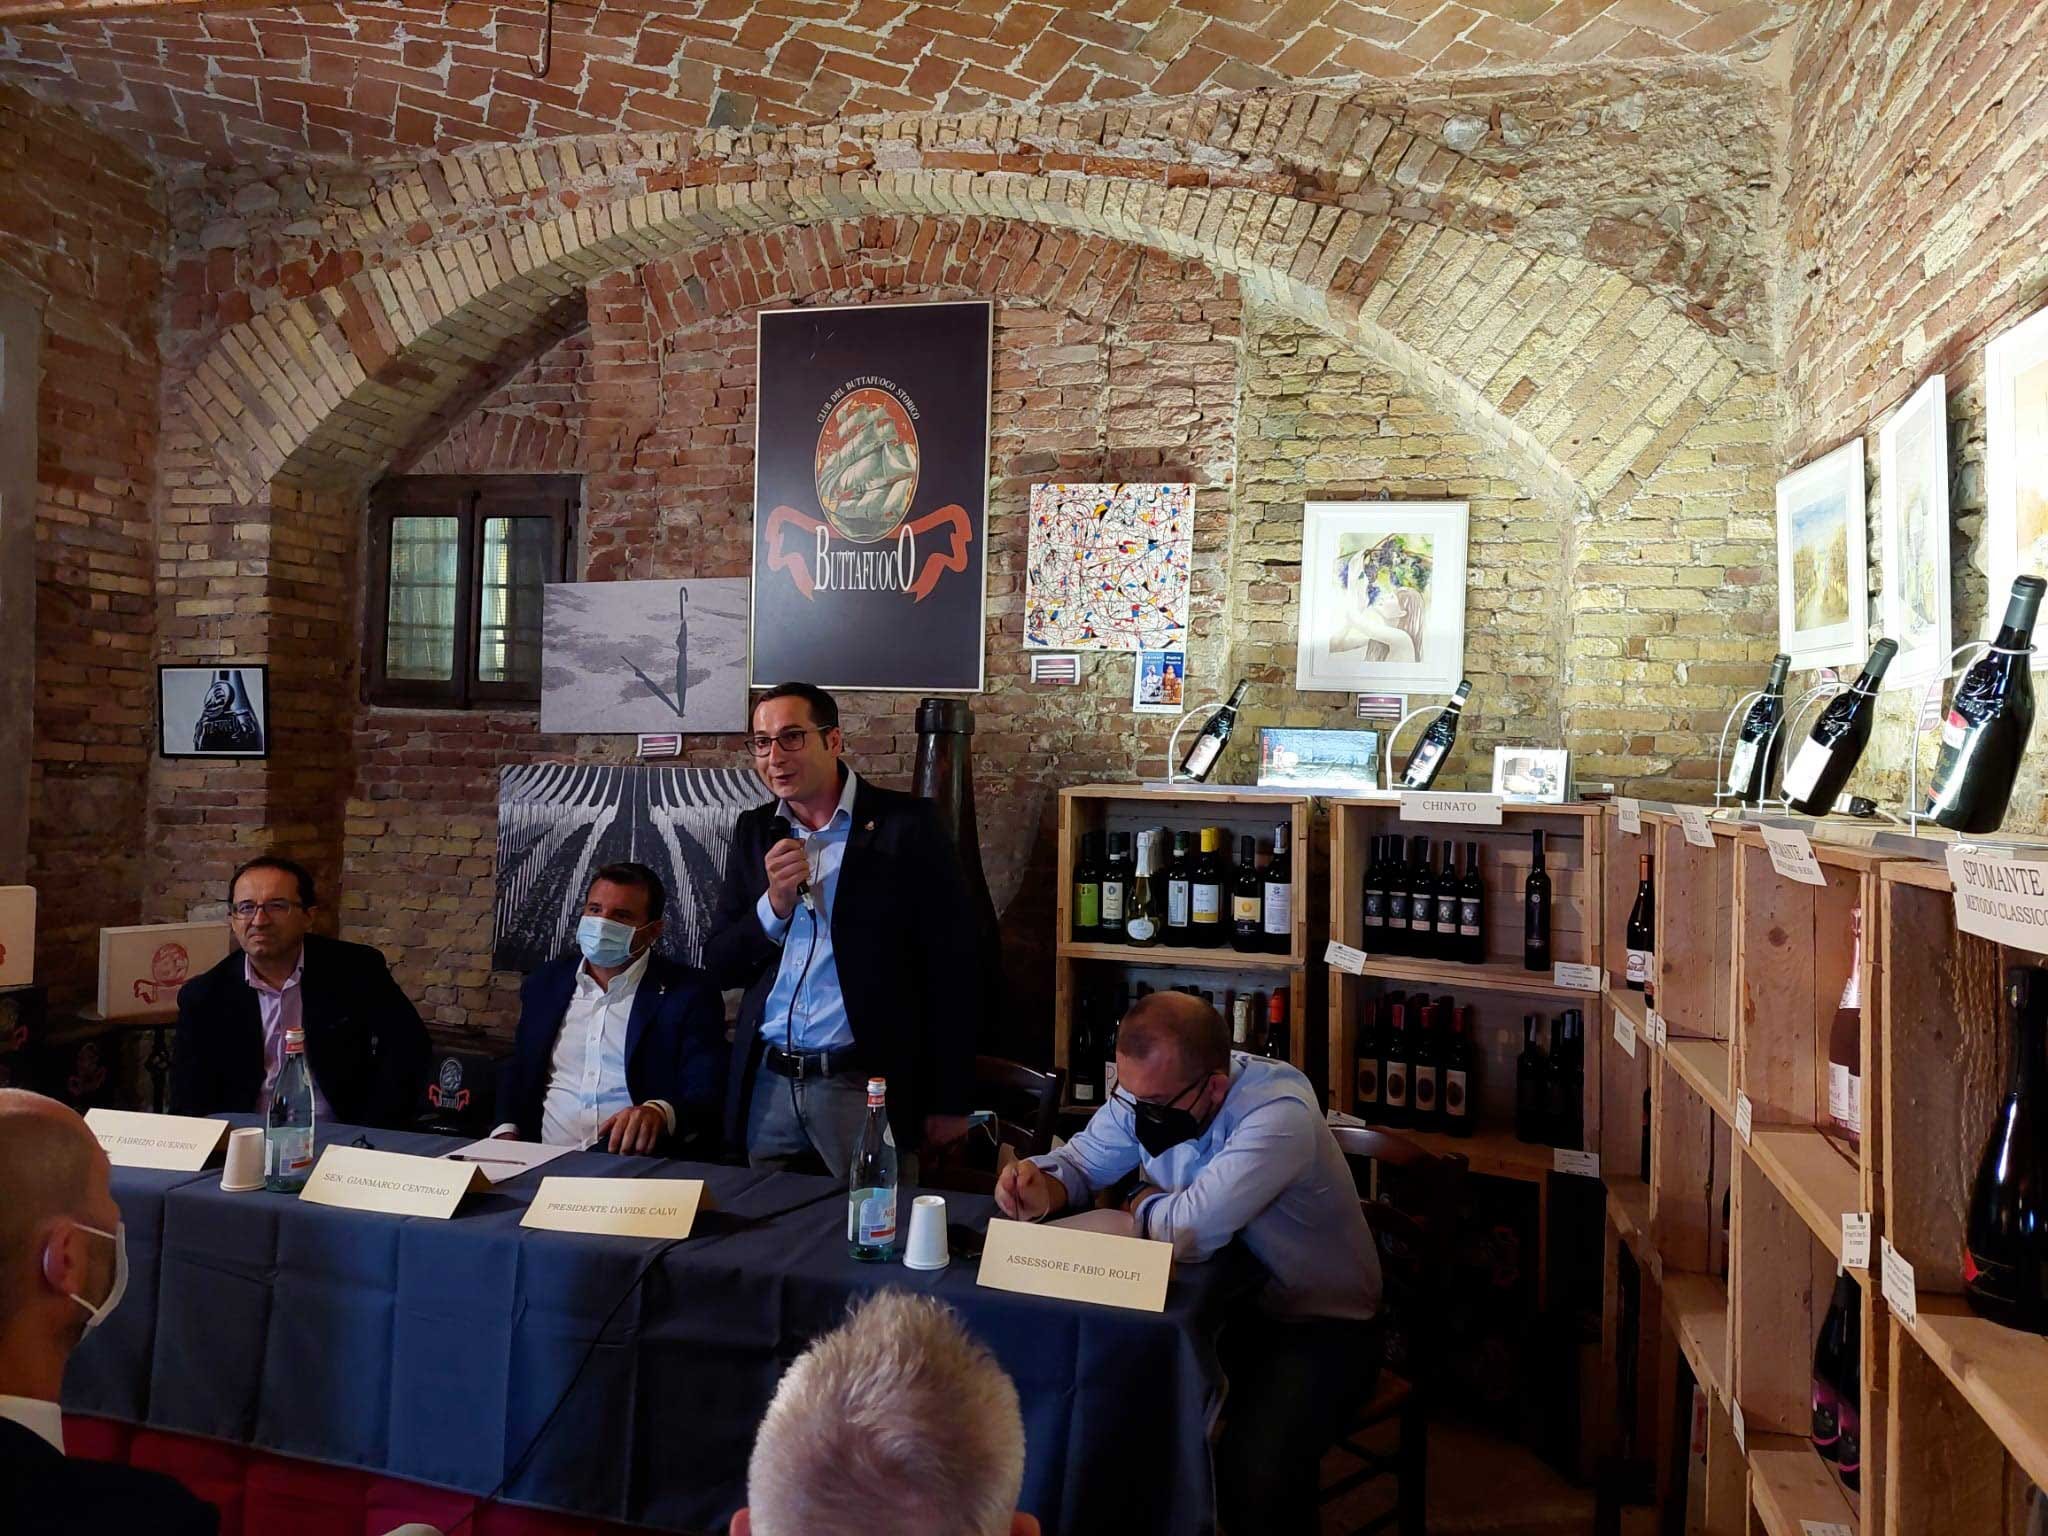 Un momento del talk ospitato presso la sede del Club del Buttafuoco Storico Oltrepò, avviata la vendemmia del rilancio. Attese positive per Bonarda e Metodo classico